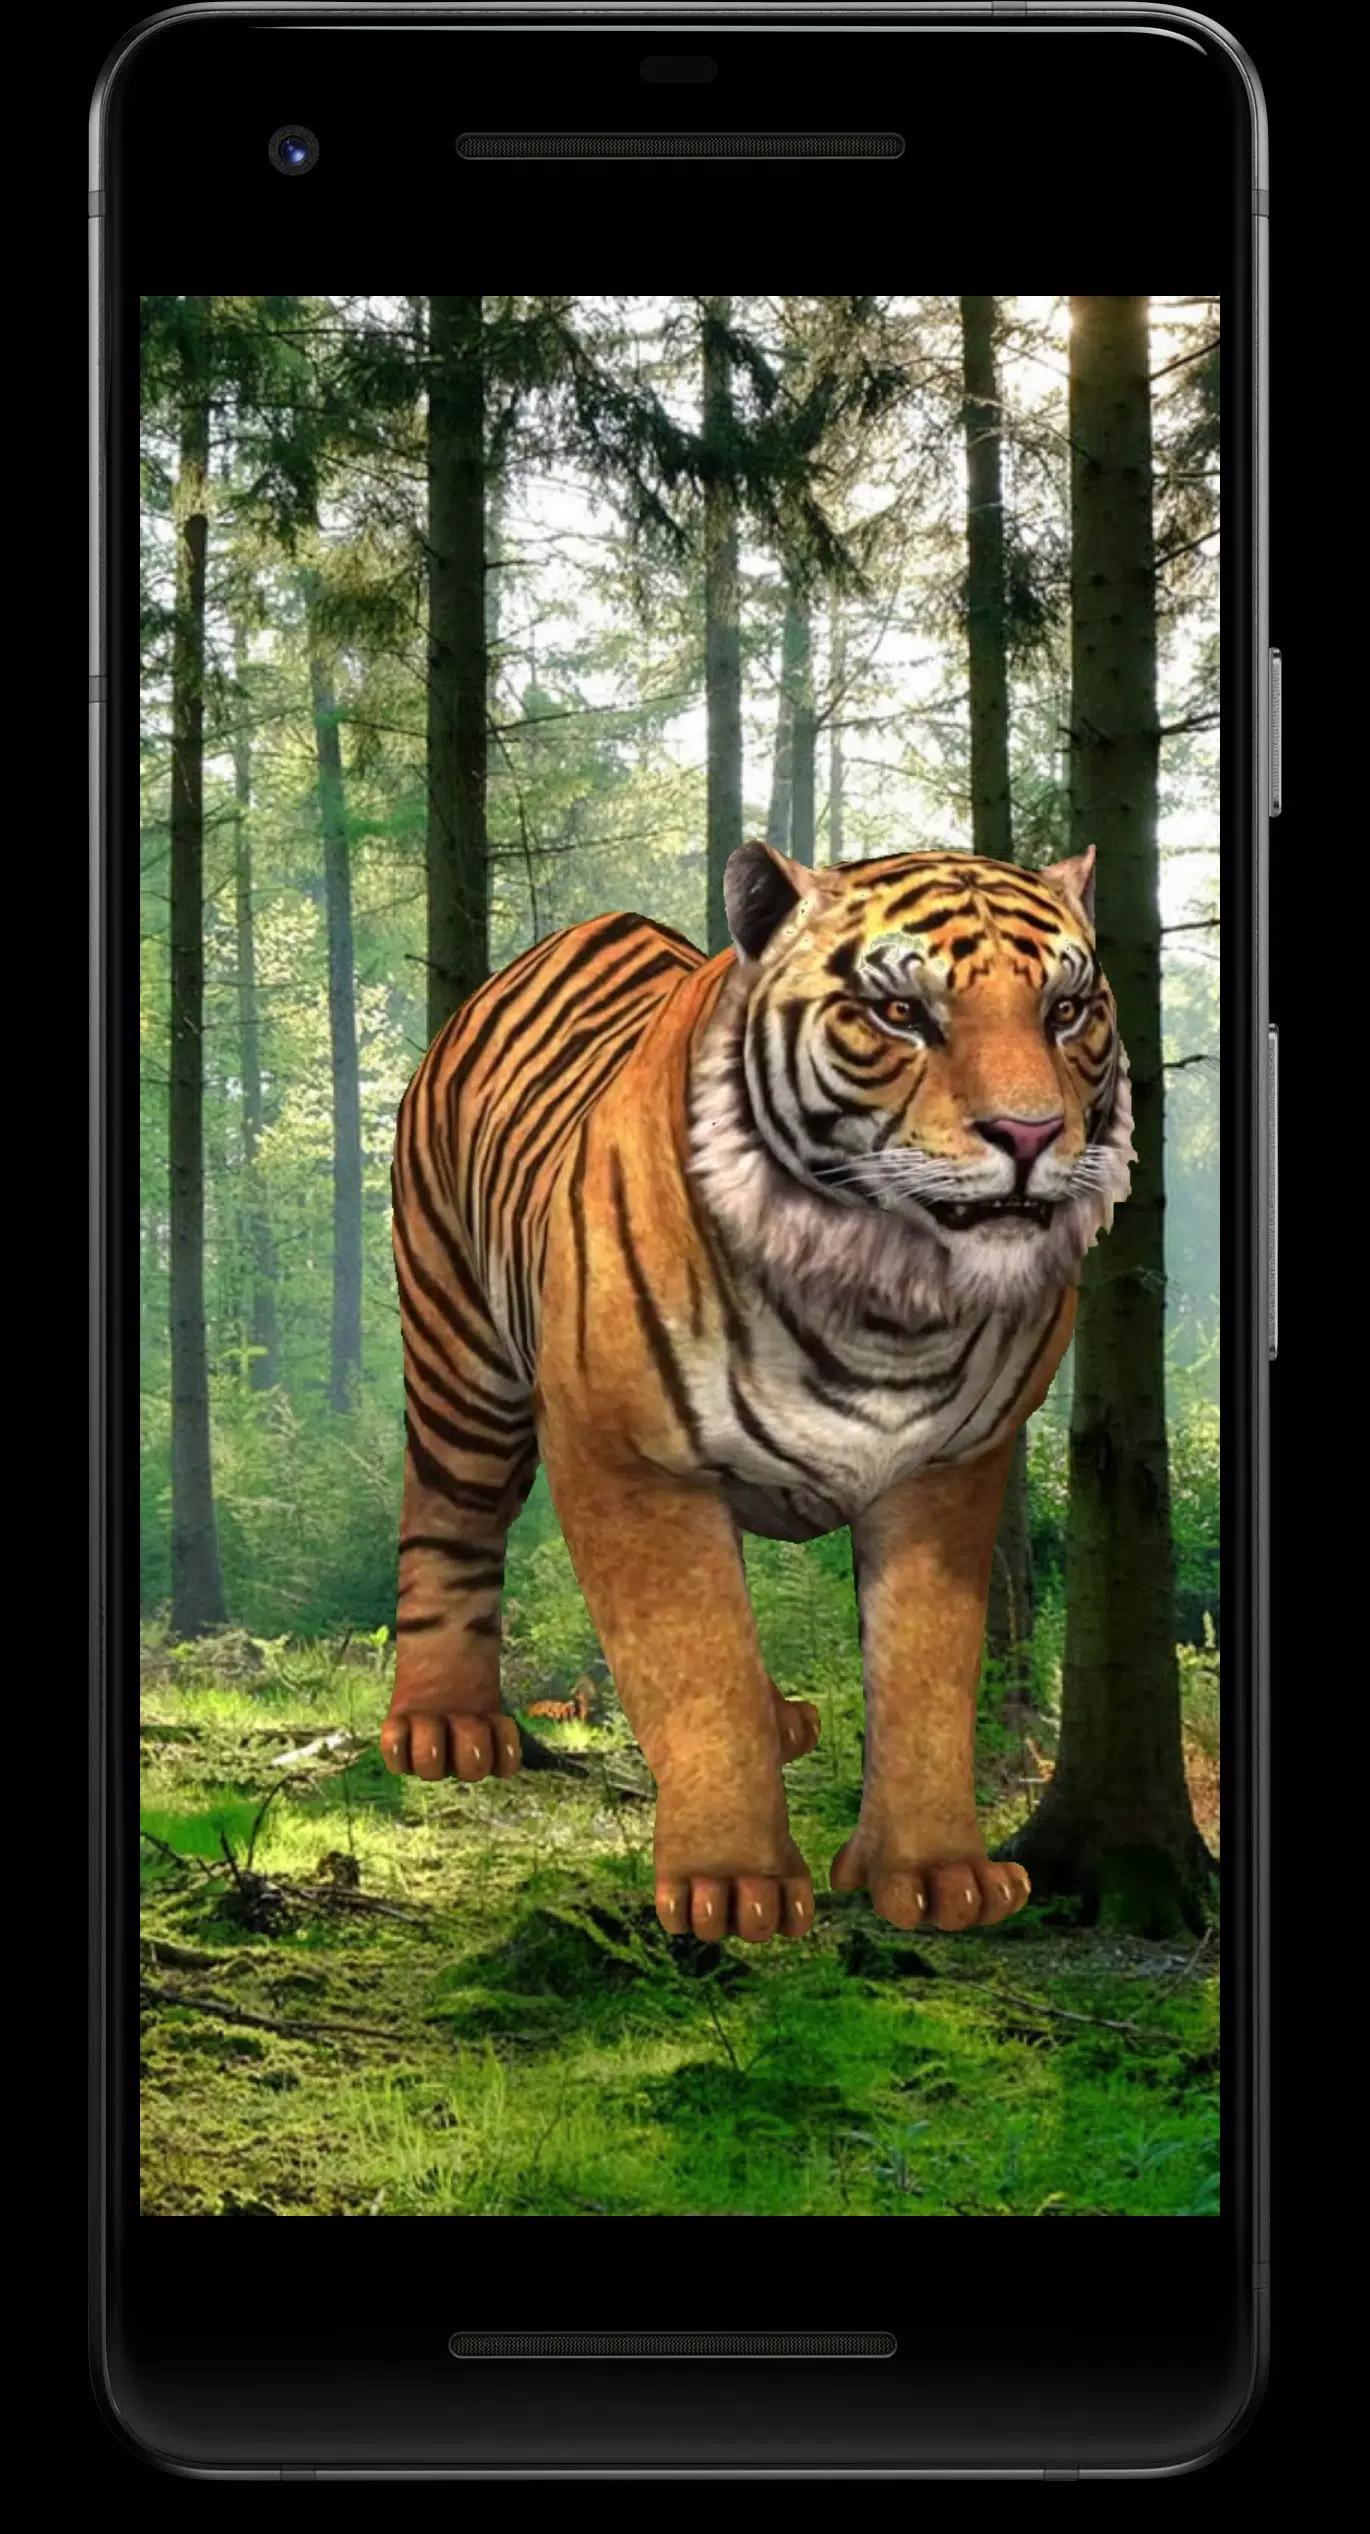 Hãy tải ứng dụng hình nền động Tiger 3D cho Android để thưởng thức những hình ảnh sinh động đến từ một trong những loài vật đẹp nhất trong tự nhiên. Với khả năng tùy chỉnh kích thước và tốc độ chạy, bạn sẽ không thể không yêu thích ứng dụng này.